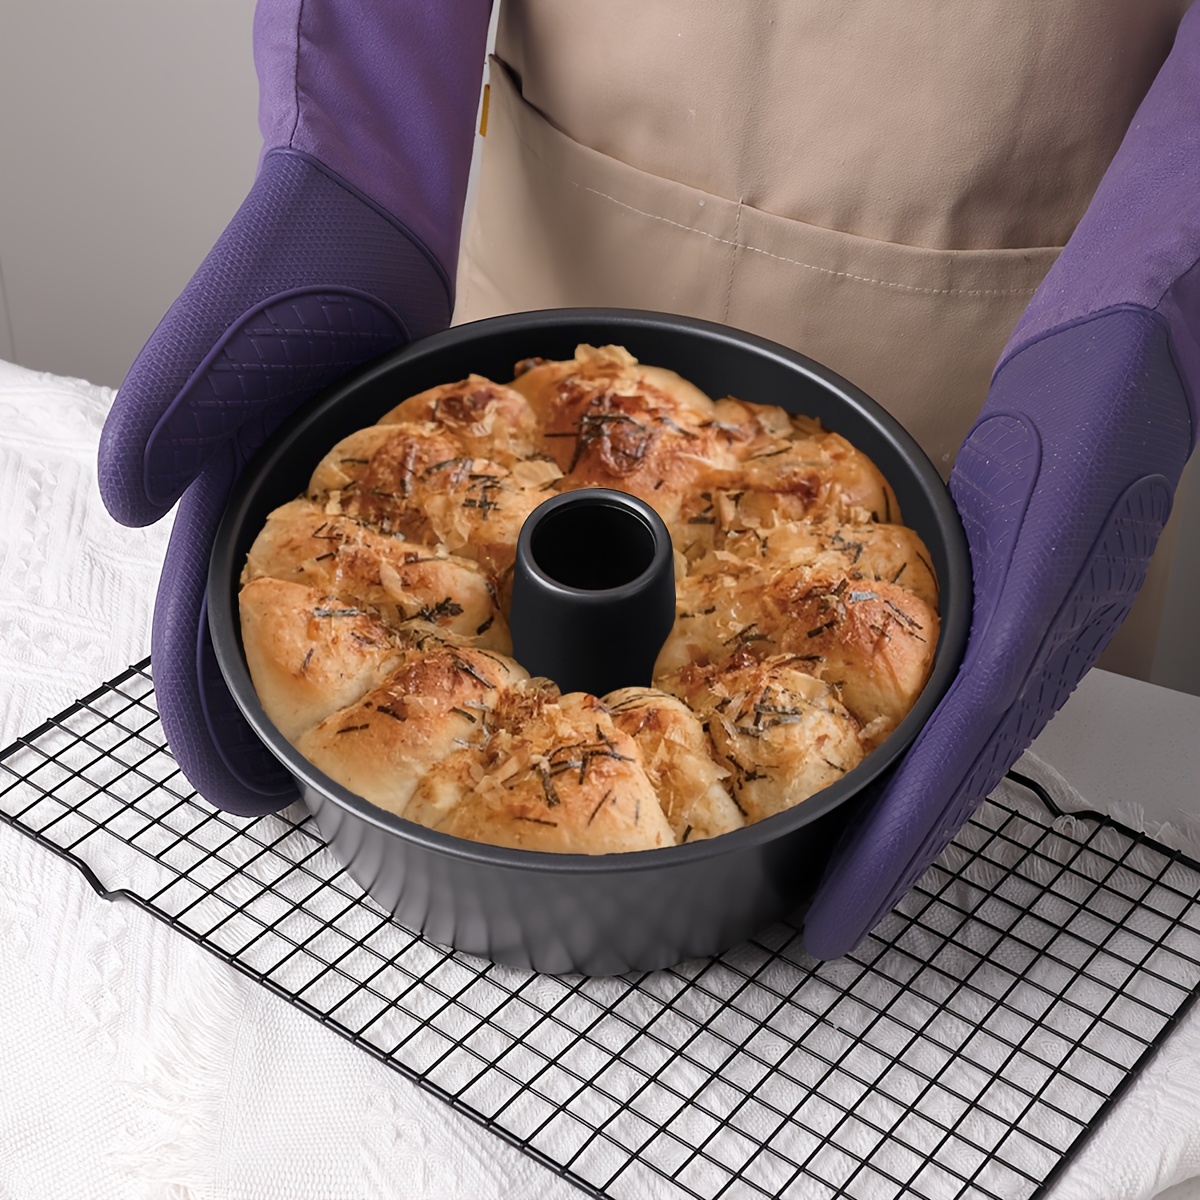 HONGBAKE Nonstick Lasagna Pan 3 Inch Deep, 9x13 Baking Pan, Rectangular  Sheet Cake Pan, Roasting Pan for Oven with Stainless Steel Handles